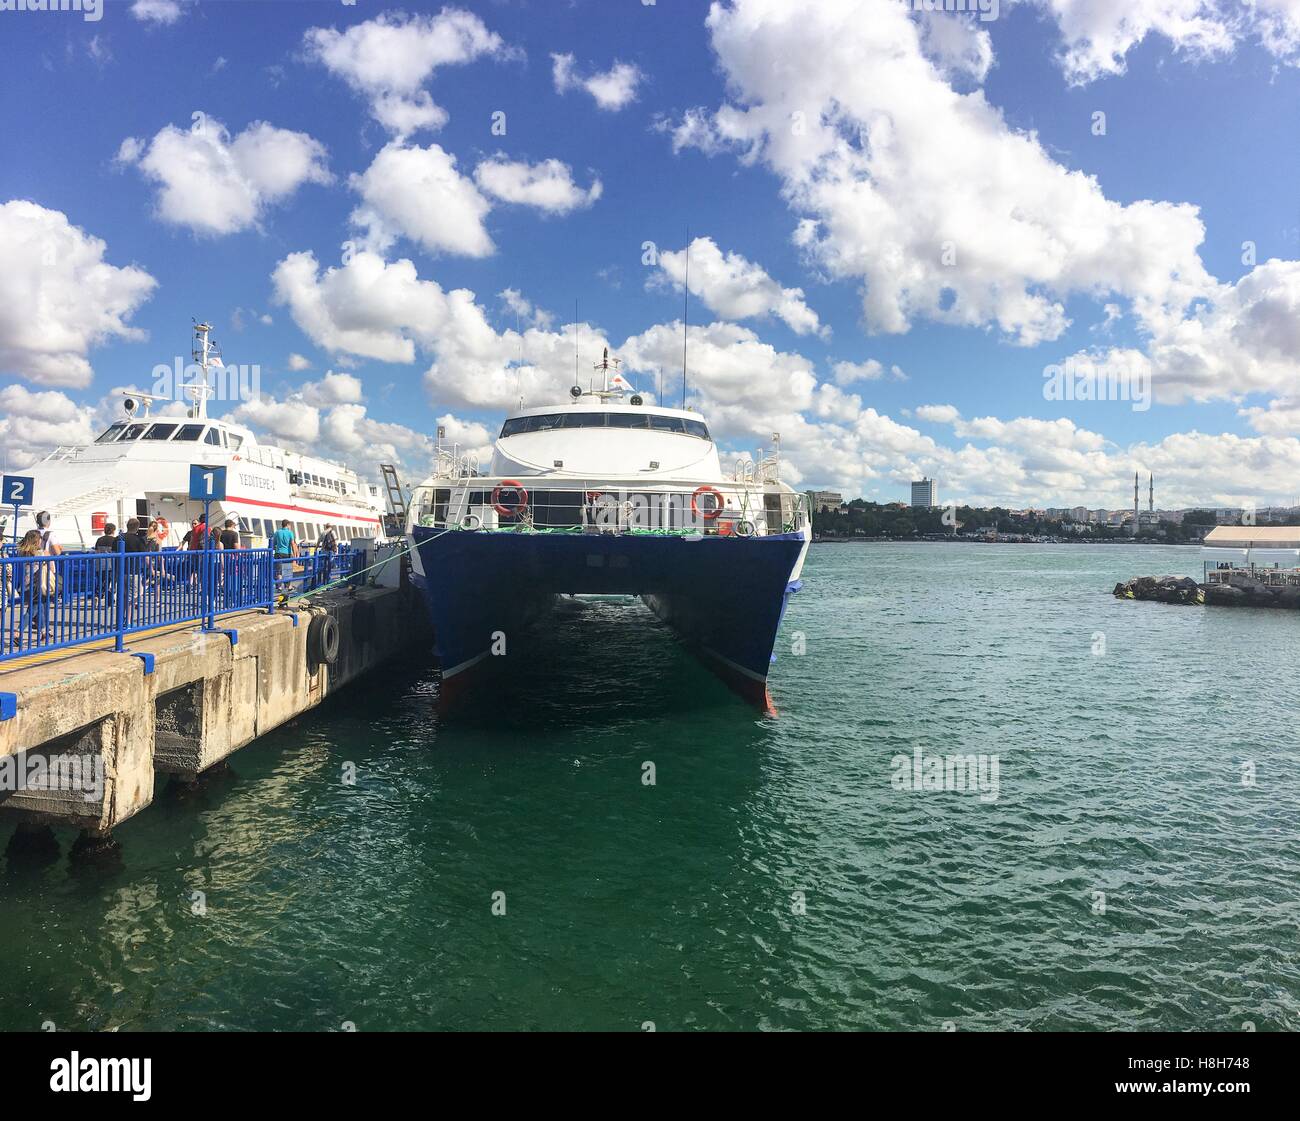 Ferry rapide au port du kadiköy. Des bateaux qui voyagent entre les ports européens et asiatiques d'istanbul. nom commercial de boat company est ido. Banque D'Images